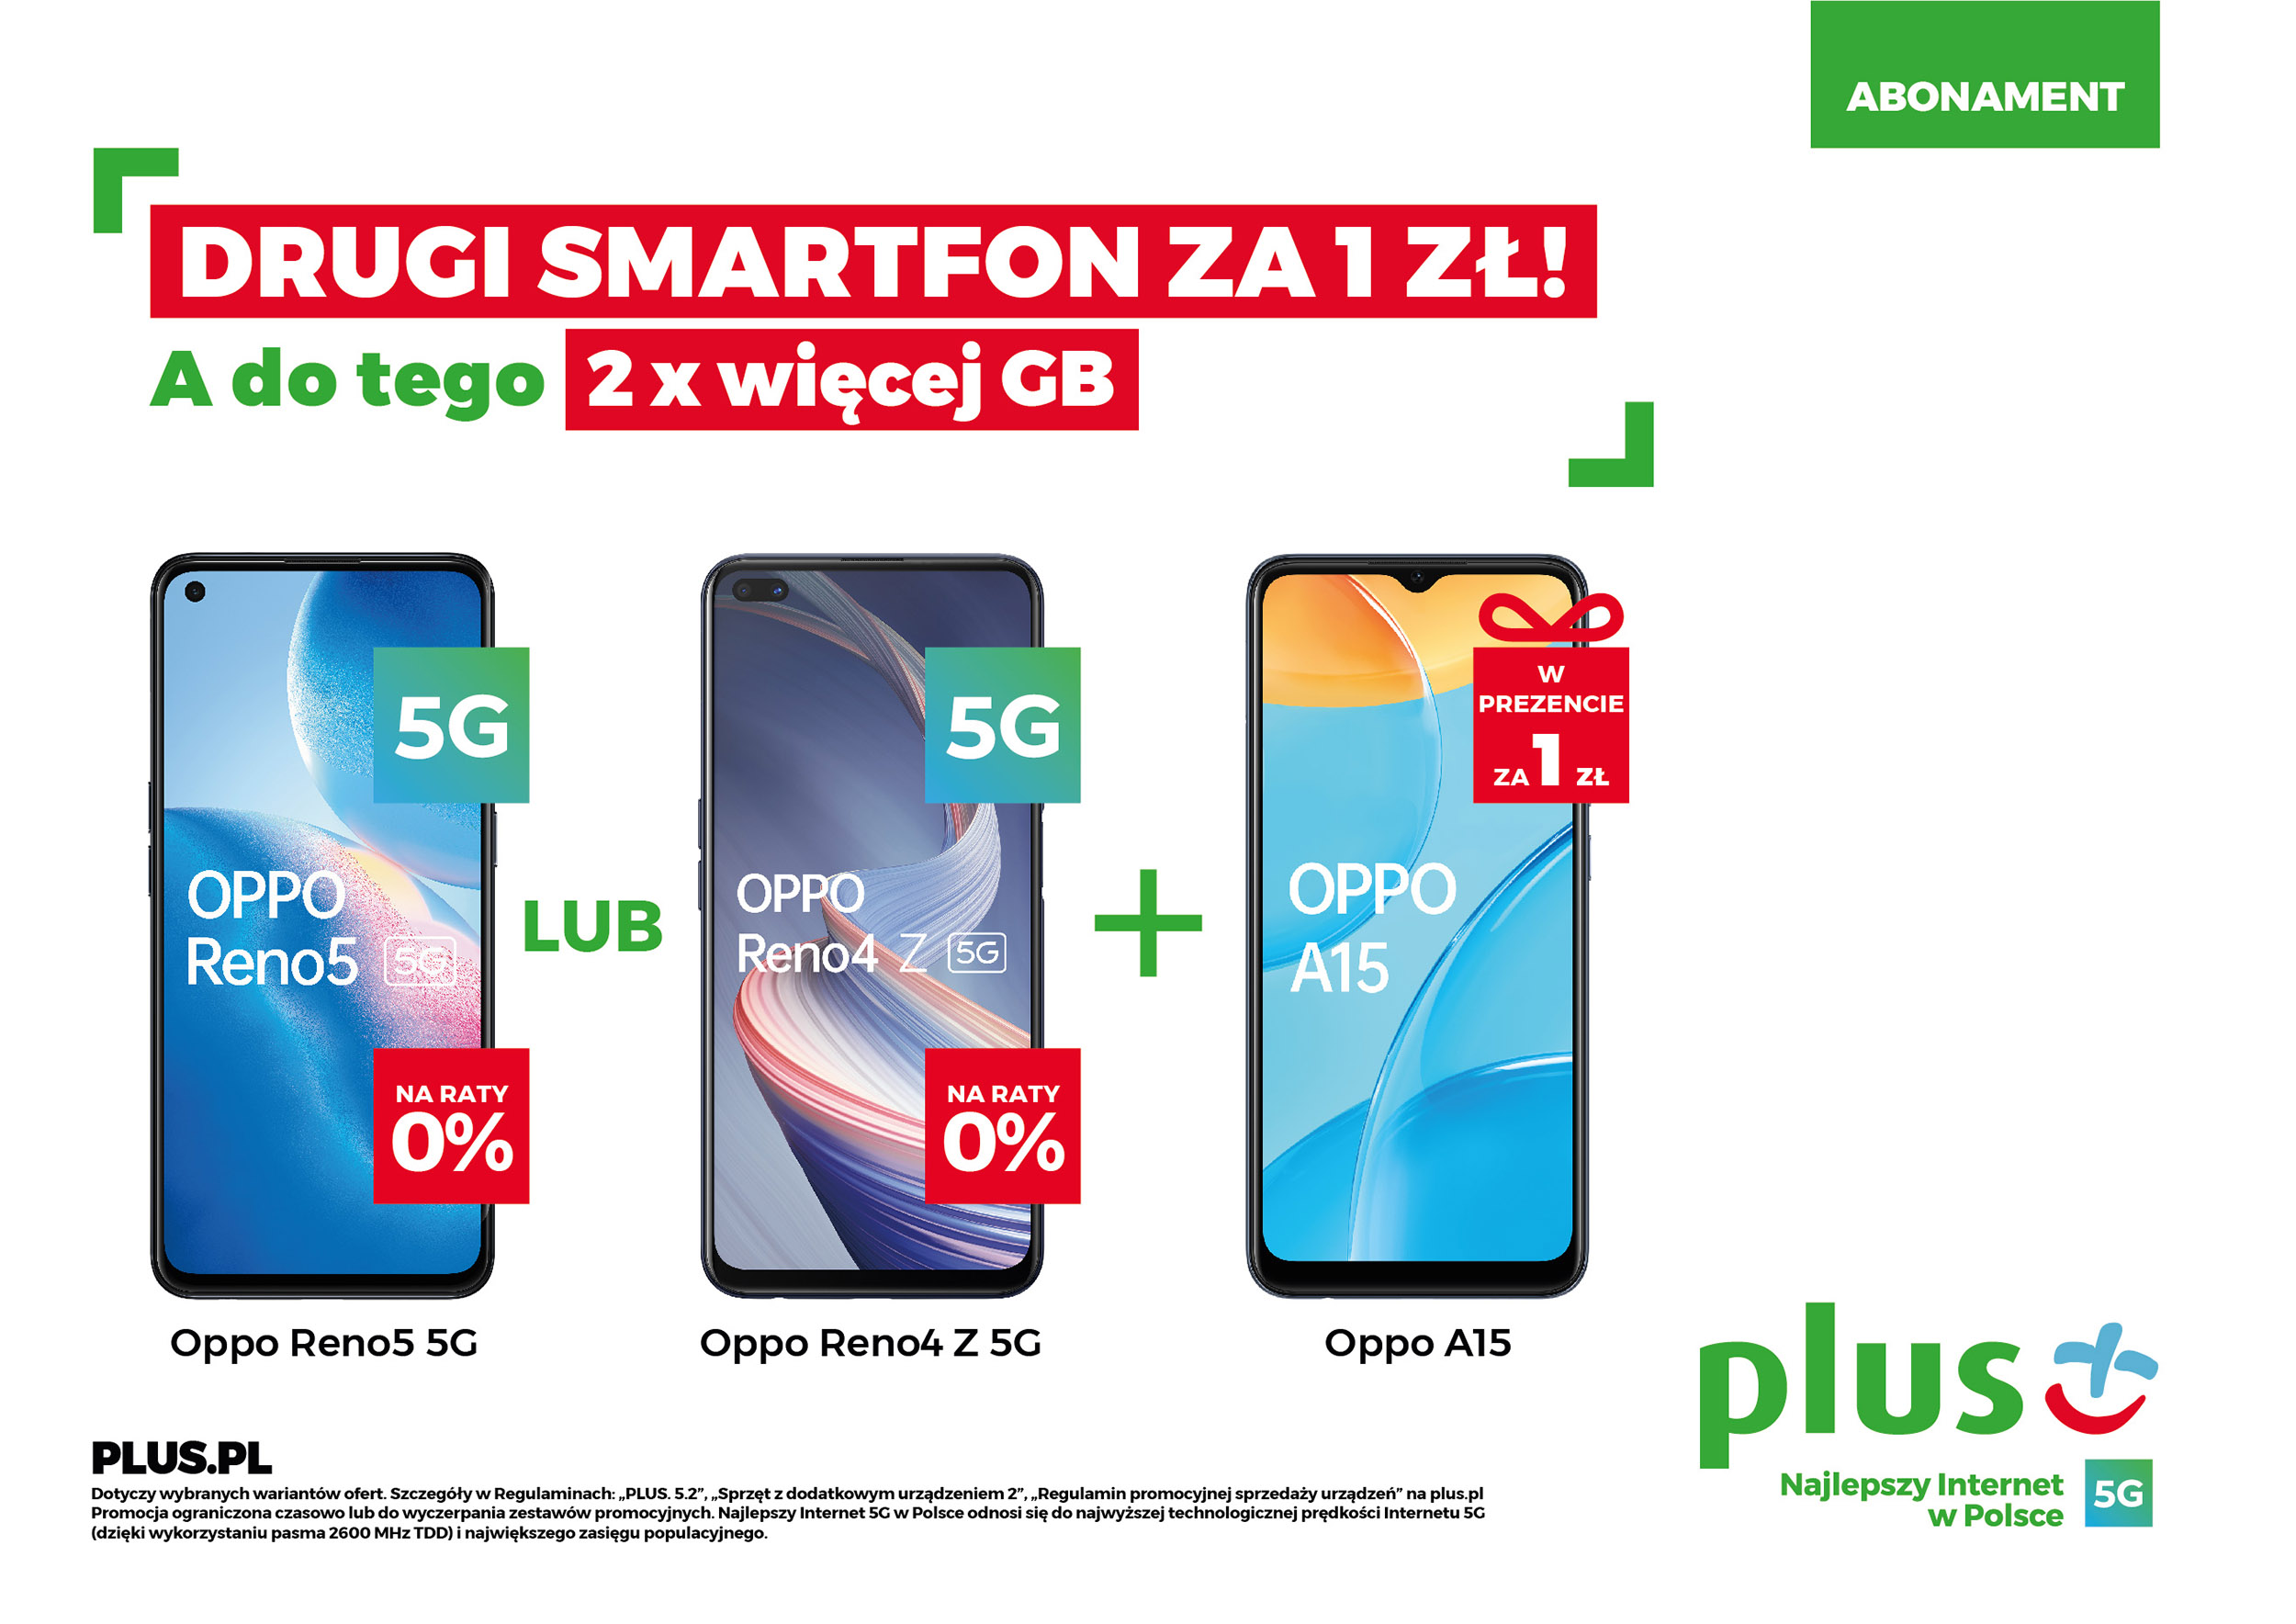 Wyjątkowa wiosenna promocja w Plusie: drugi smartfon za 1zł oraz 2x więcej GB w abonamencie